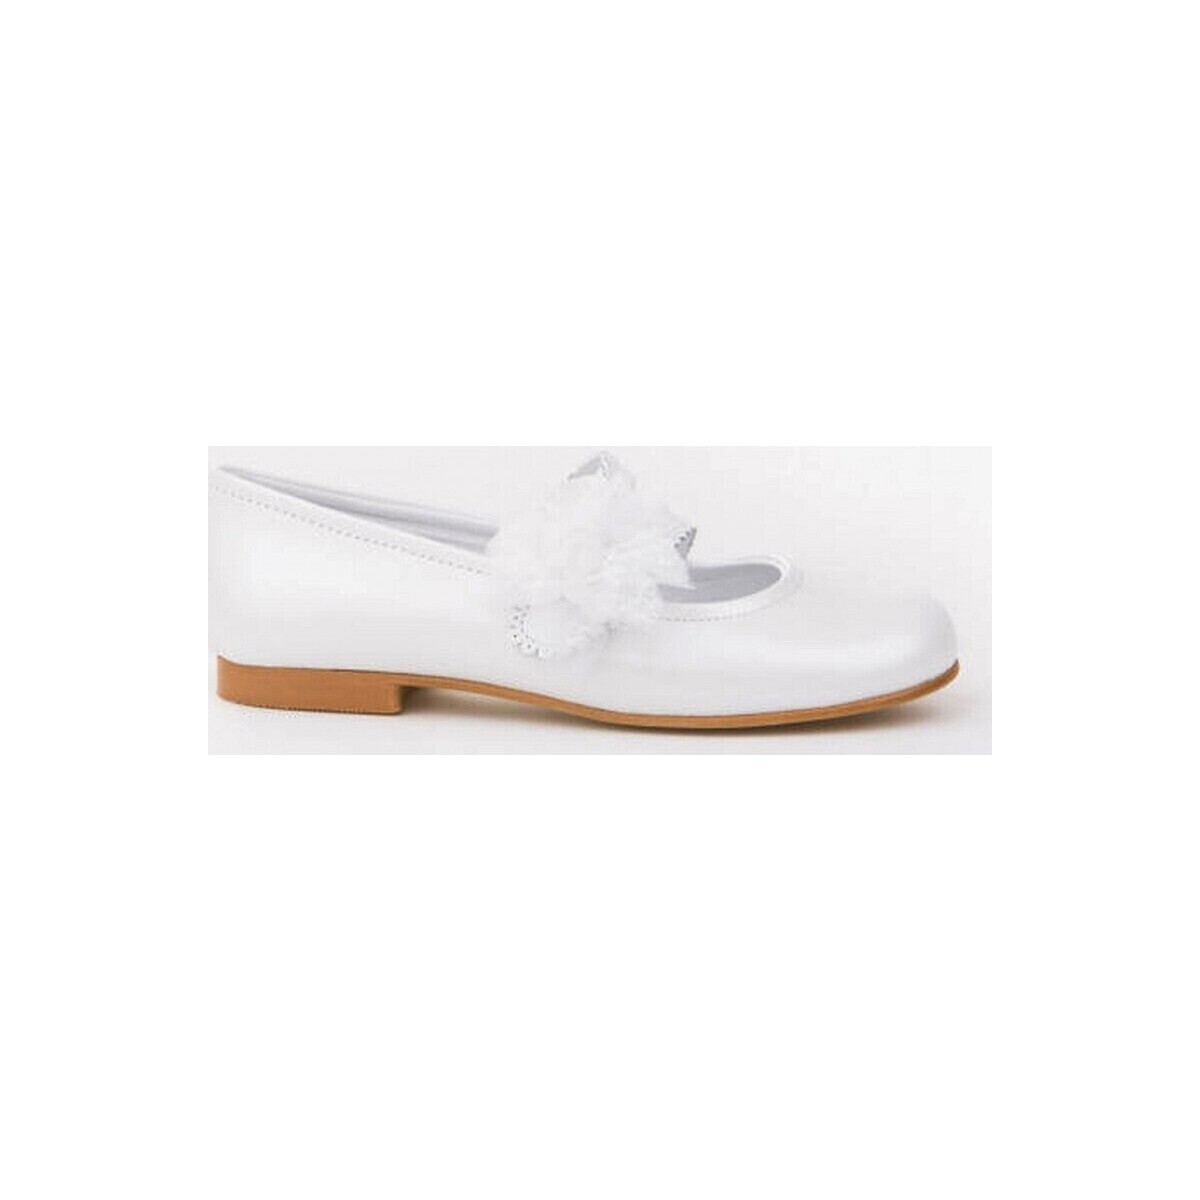 Παπούτσια Κορίτσι Μπαλαρίνες Angelitos 20873-24 Άσπρο